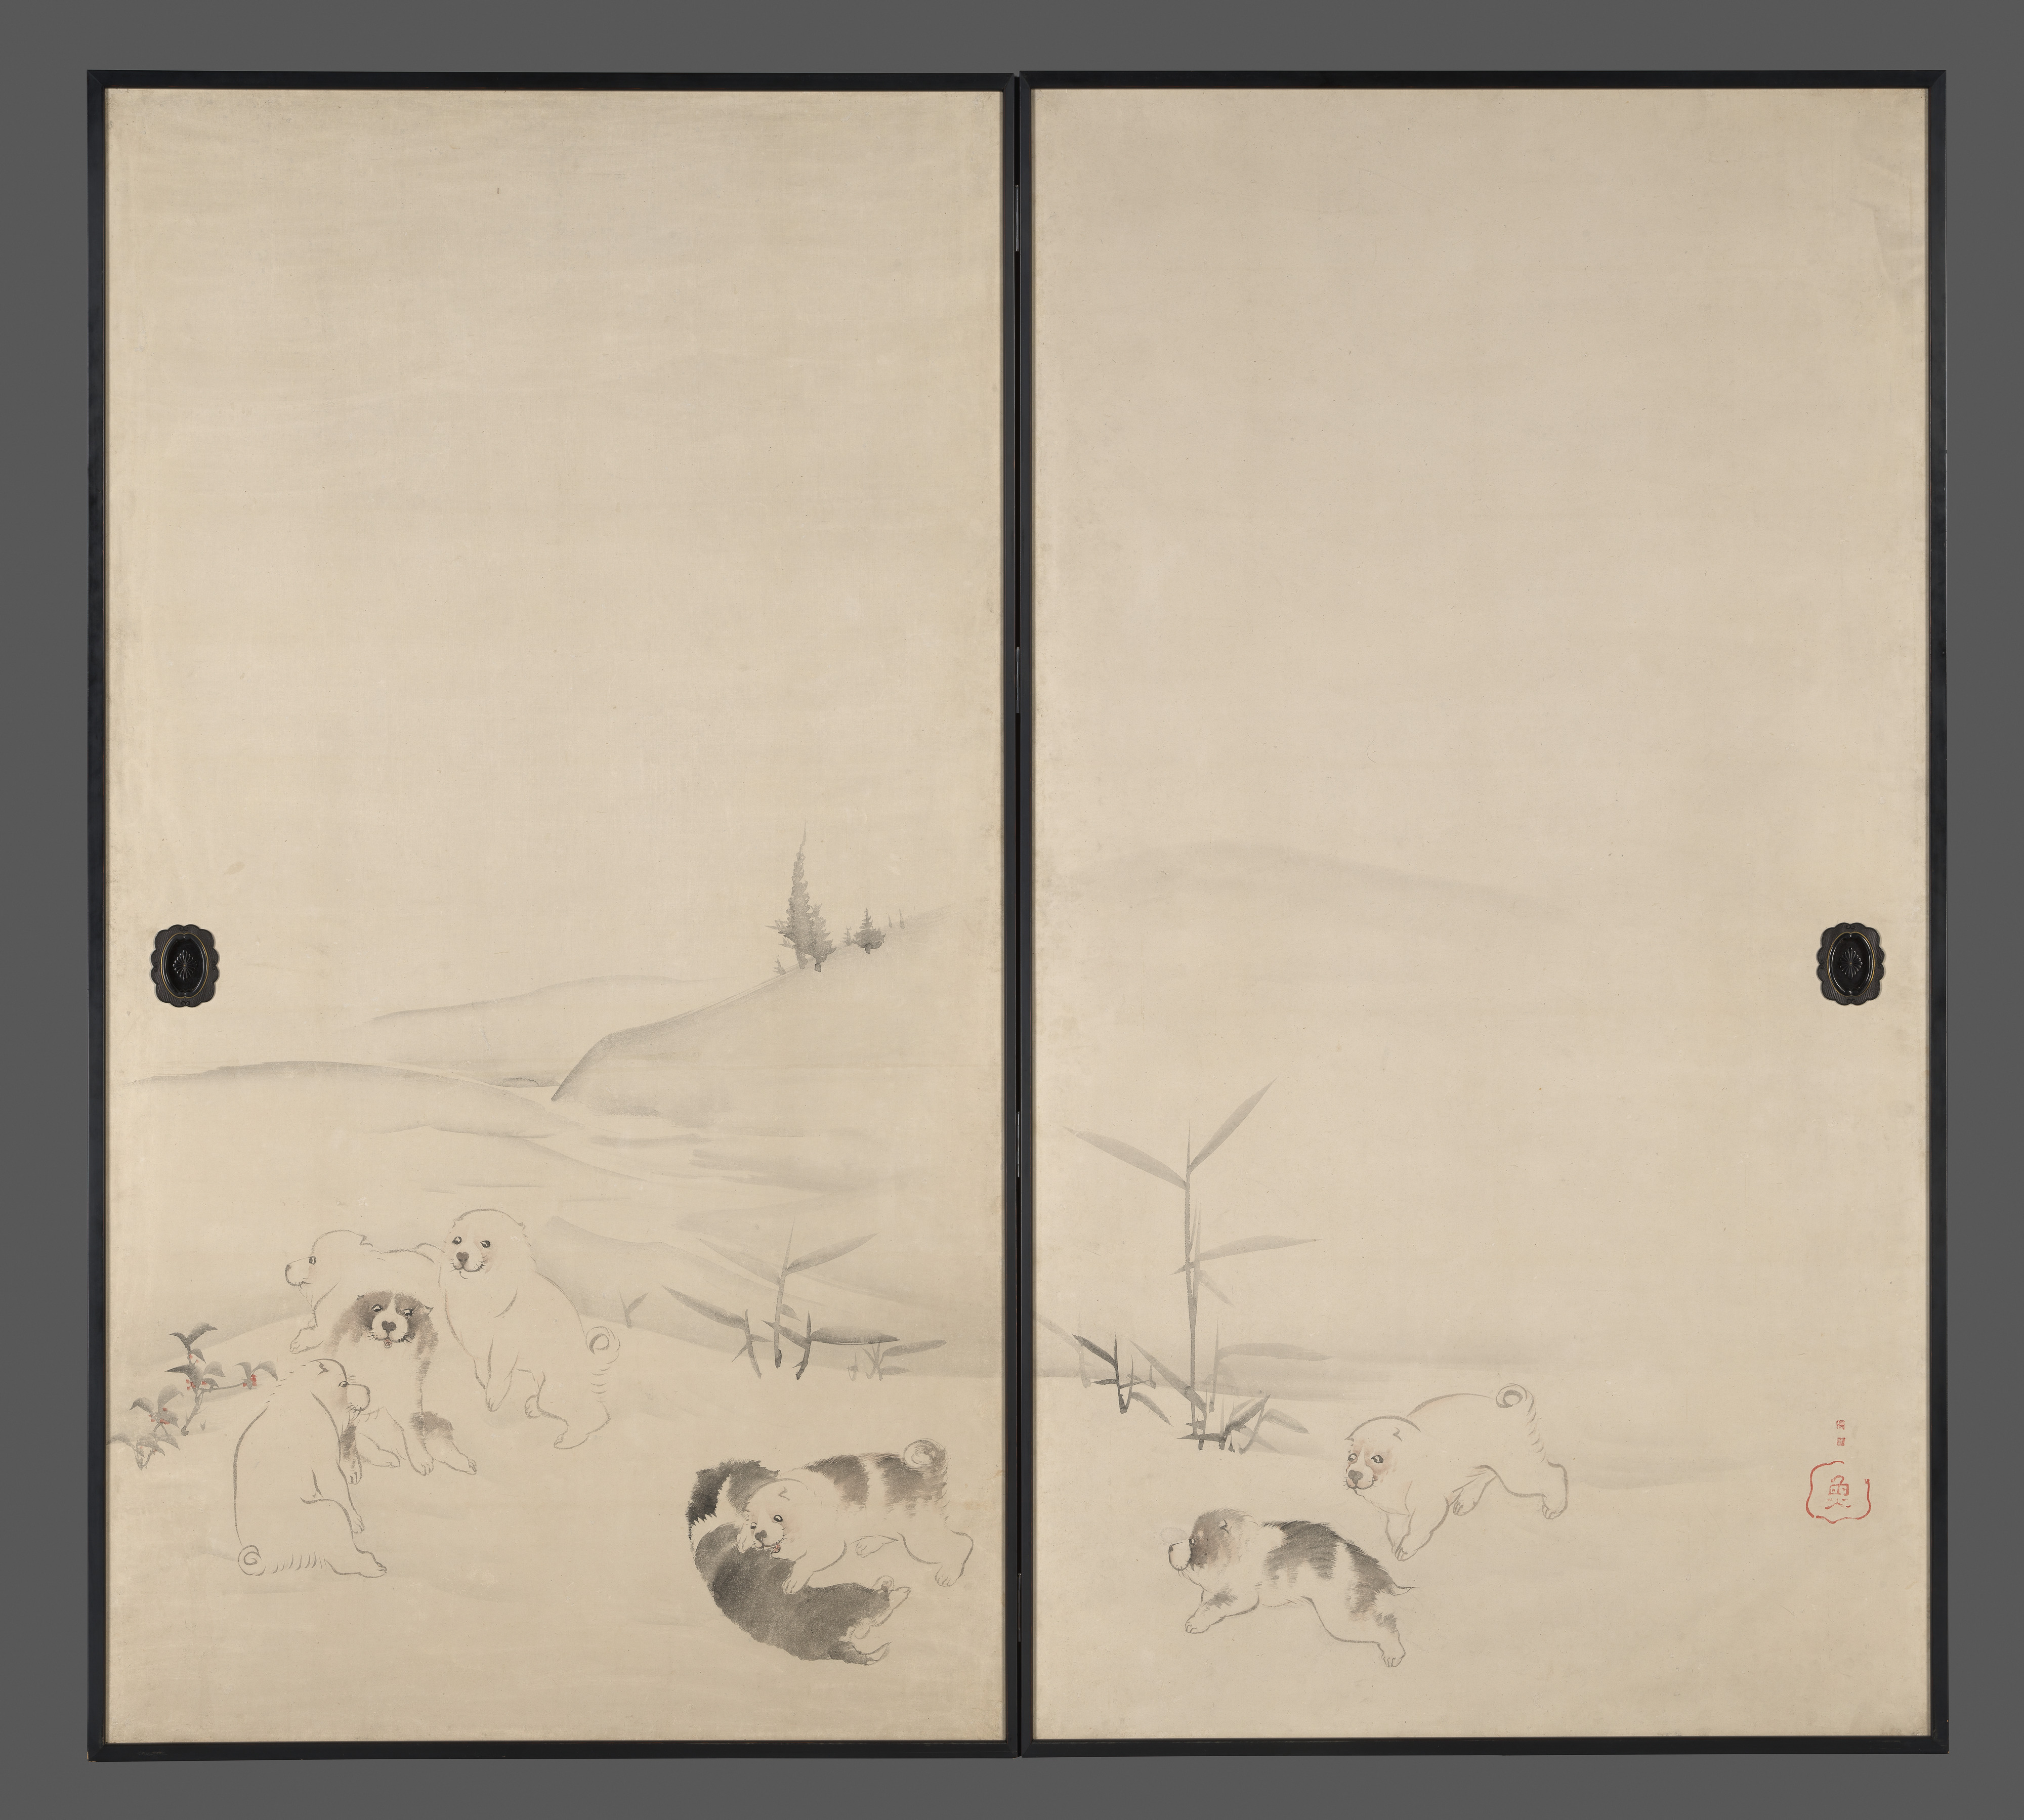 雪中的小狗 by Nagasawa Rosetsu - 1792 年至 1799 年 - 168.7 × 183 釐米 